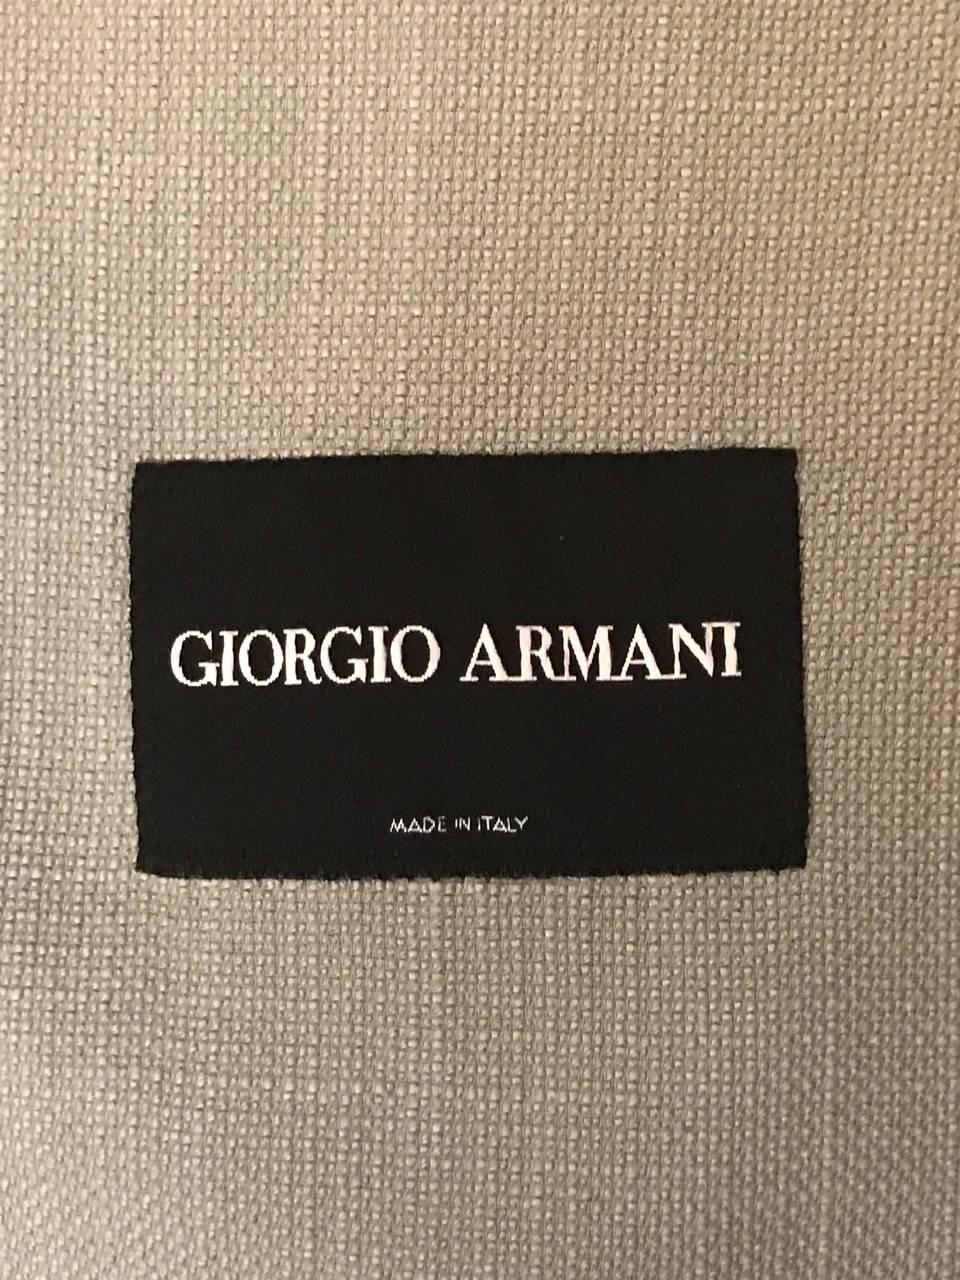 giorgio label